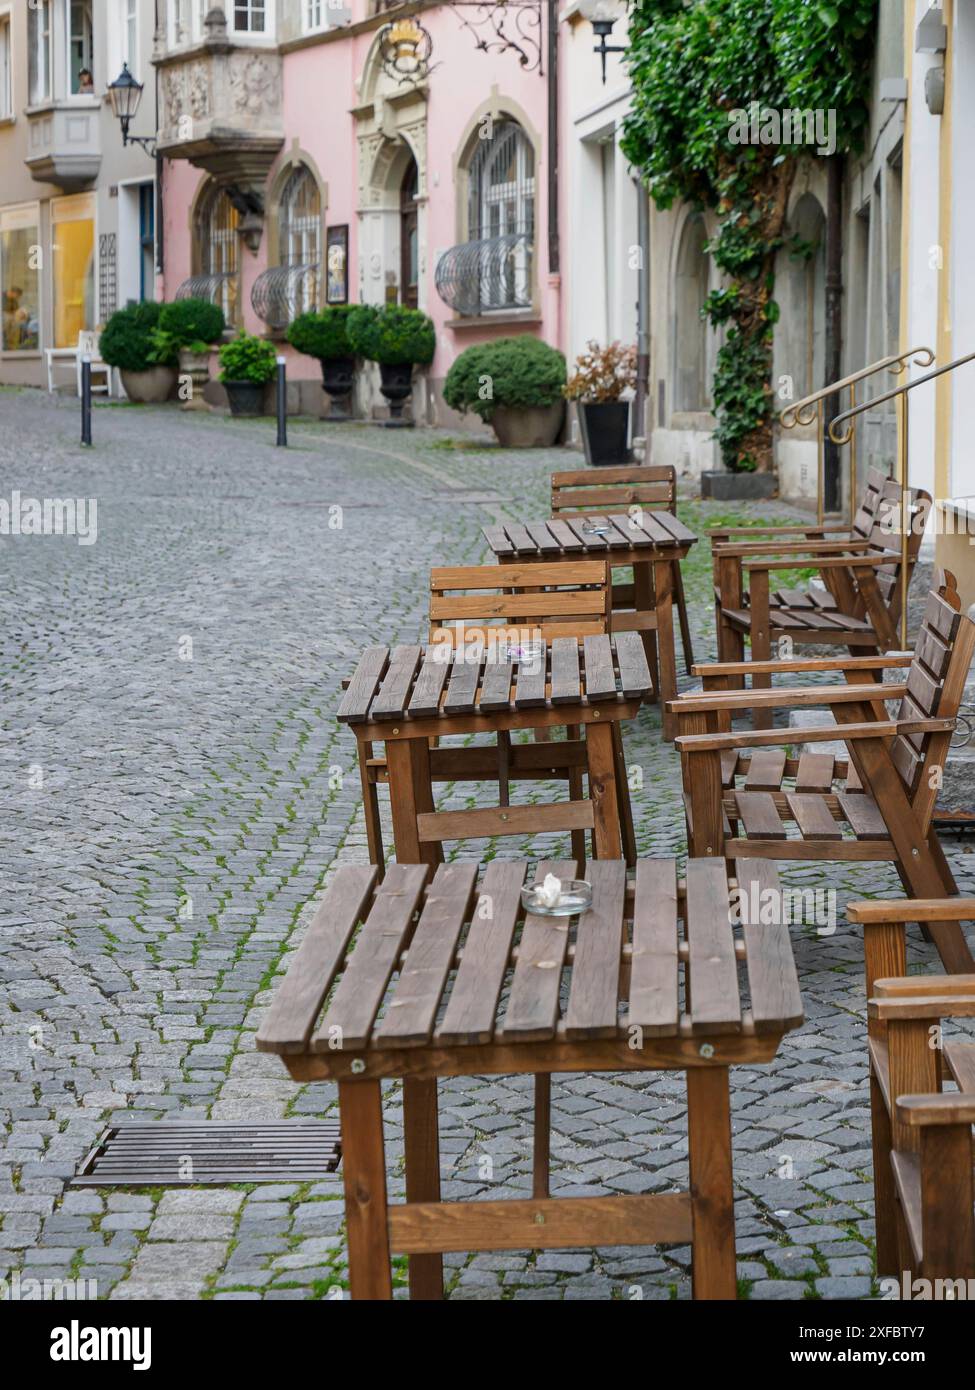 Tavoli e sedie vuoti in legno su una strada acciottolata in una zona tranquilla della città vecchia, lindau, baviera, germania Foto Stock